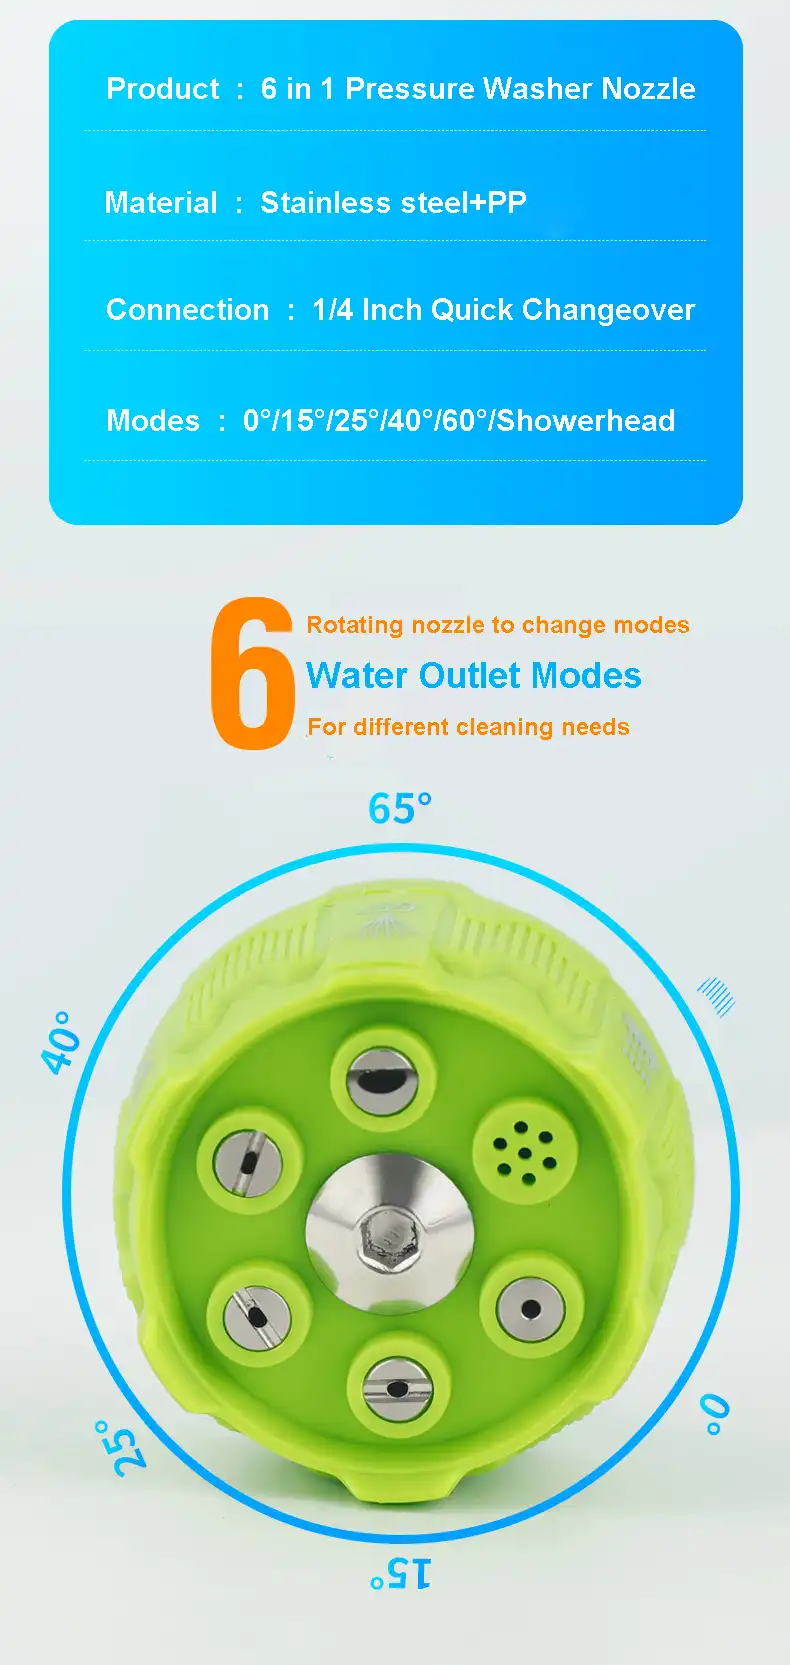 6in1 Pressure Washer Nozzle